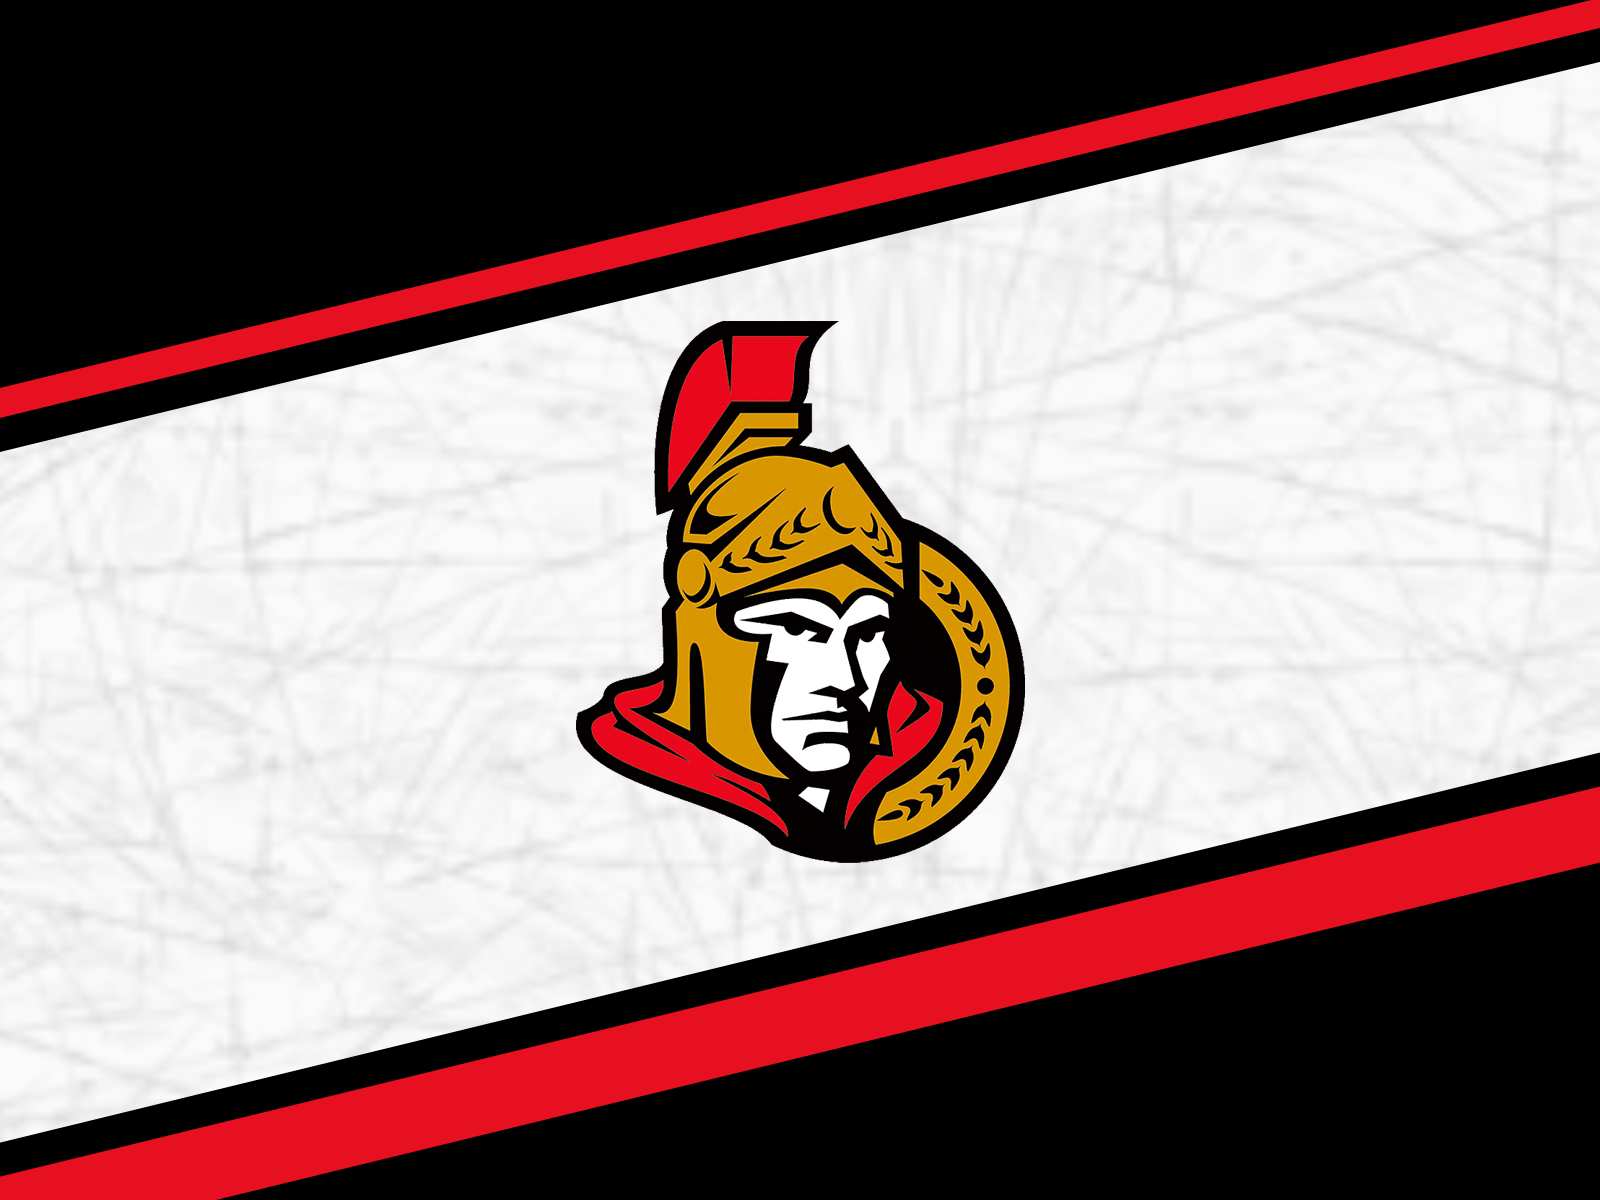 Ottawa Senators Wallpaper Background